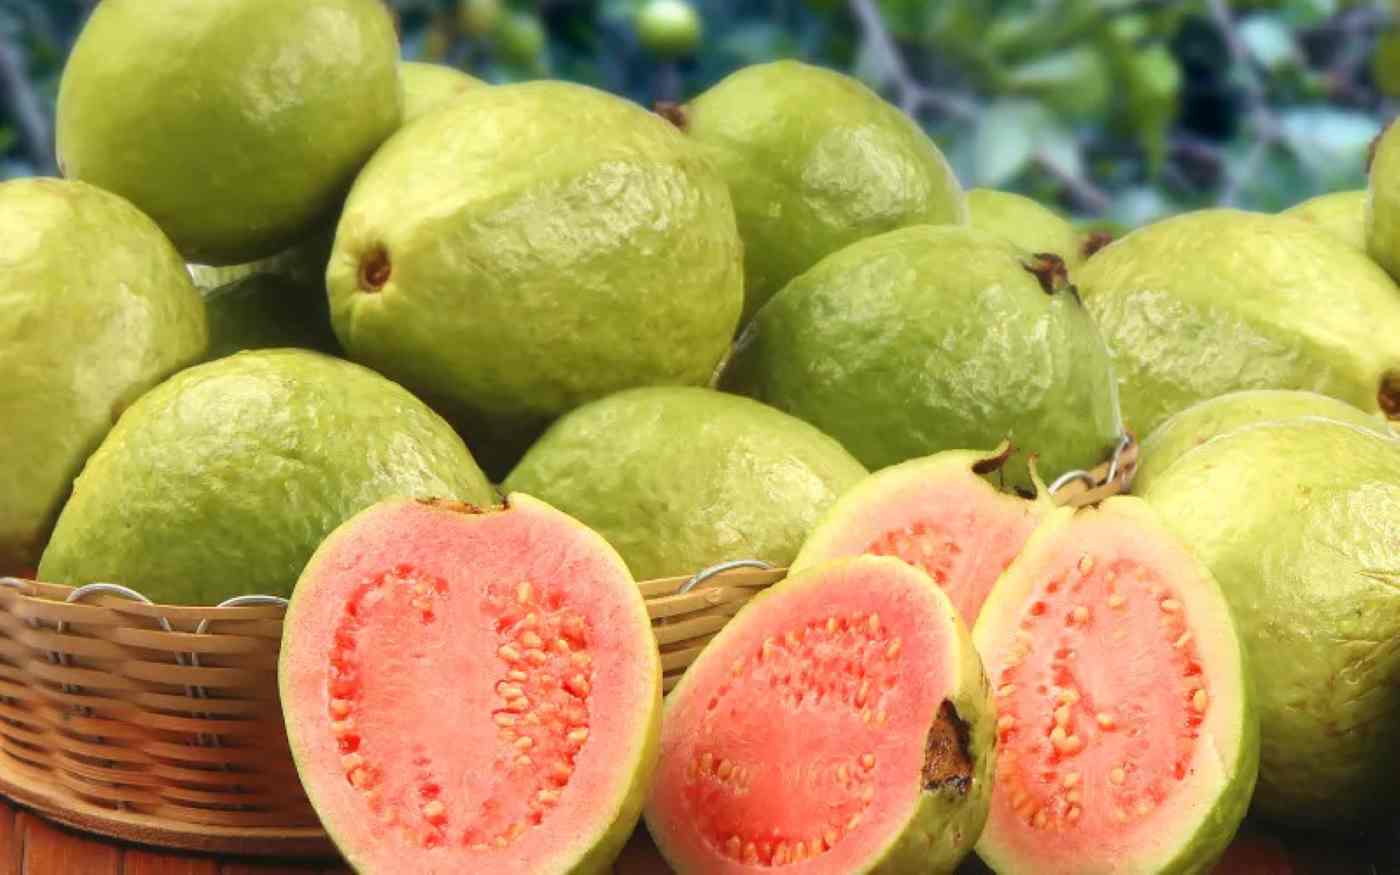 Come si mangia la guava?